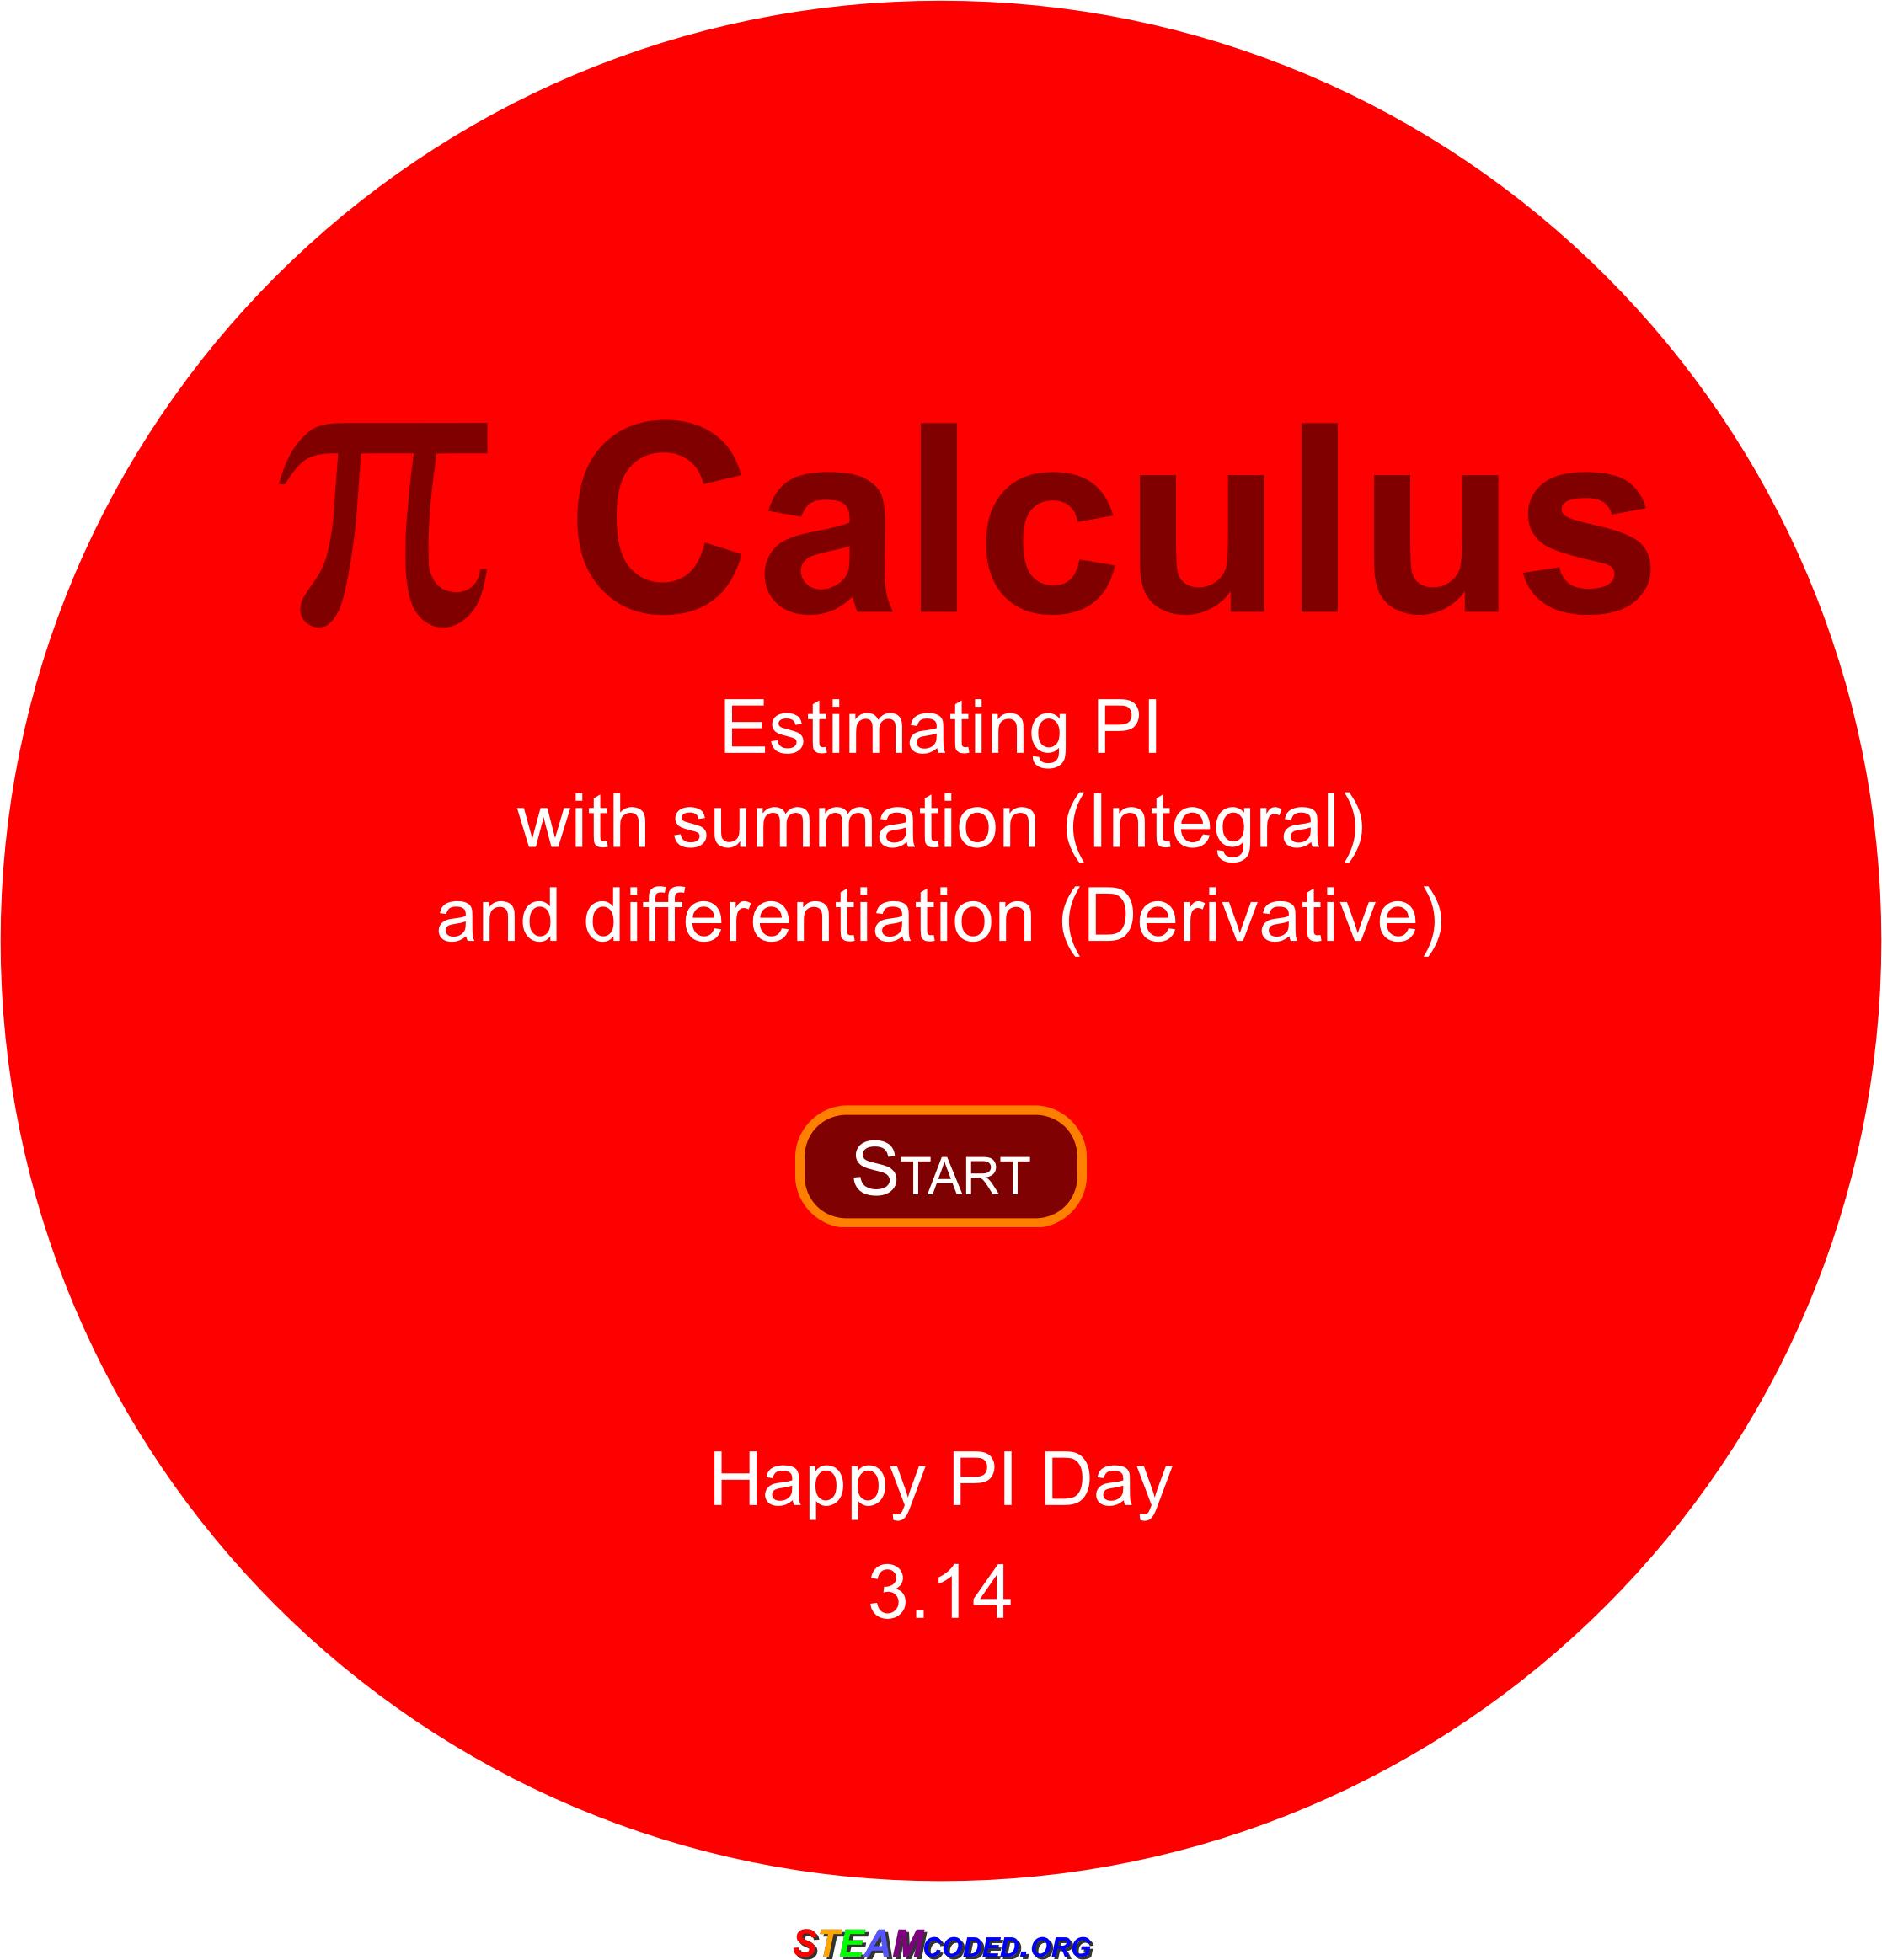 PI Calculus icons